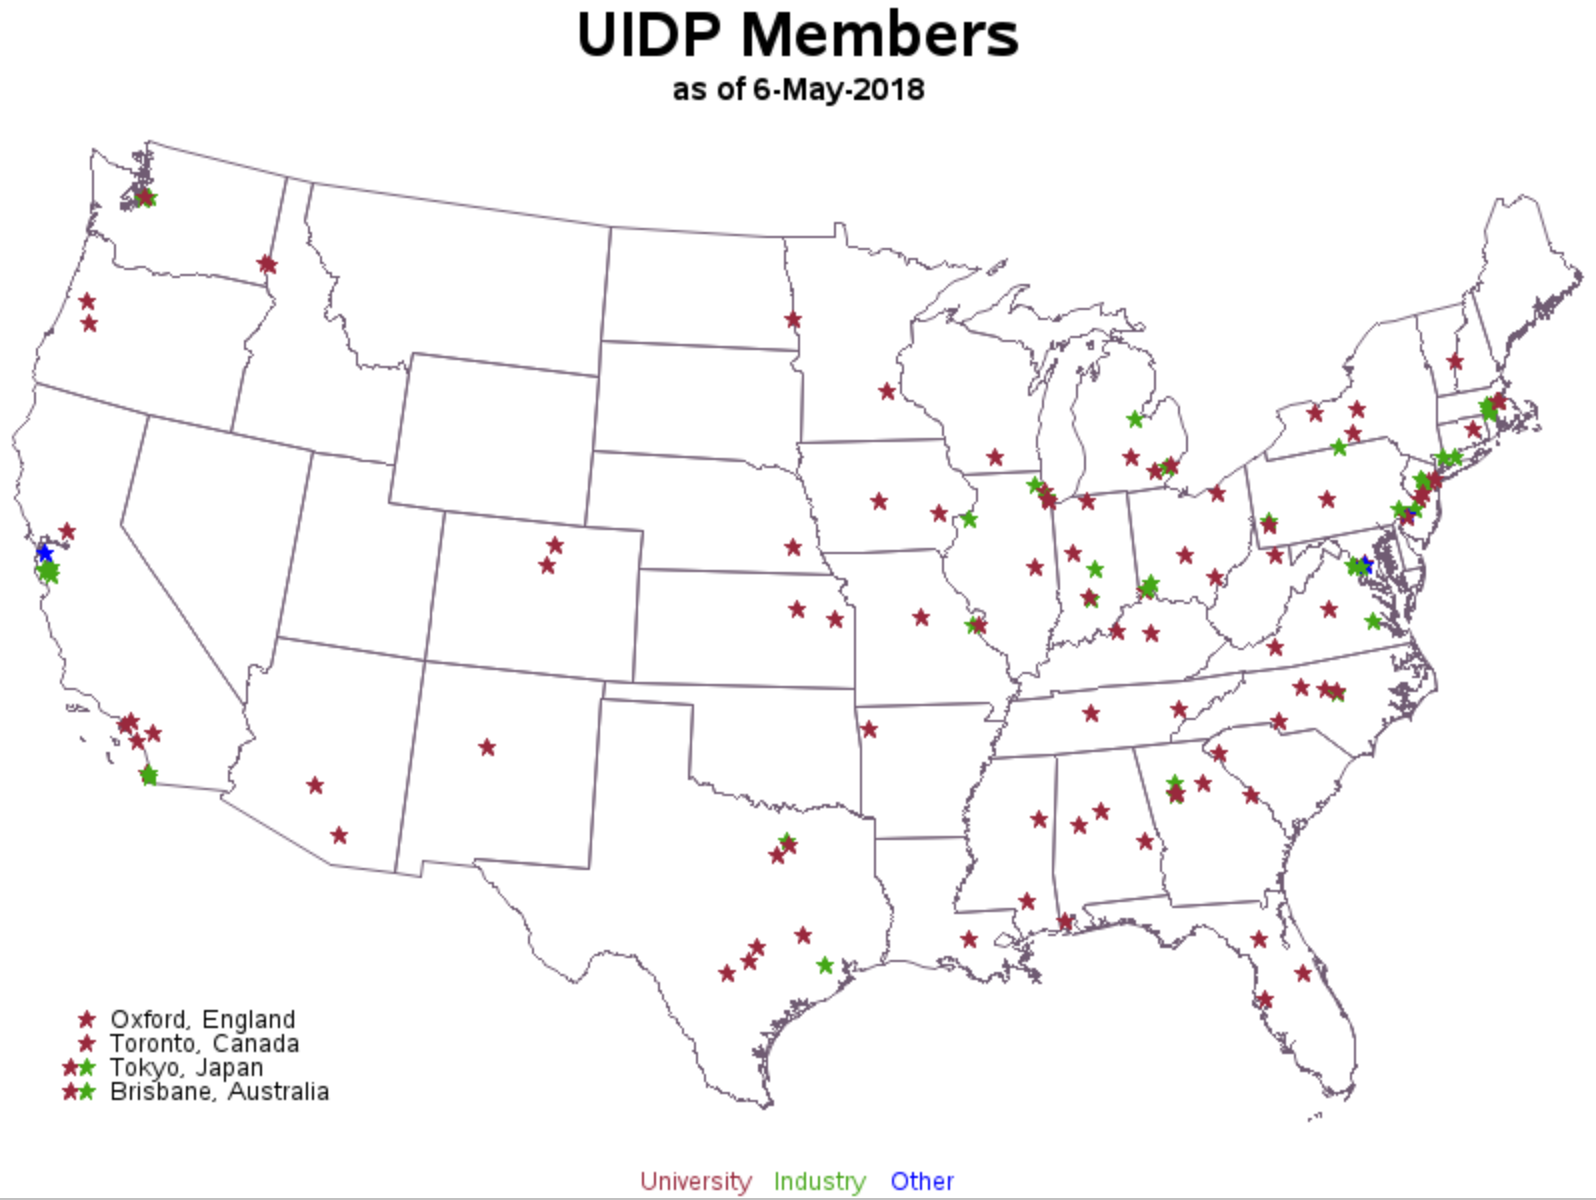 UIDP Members